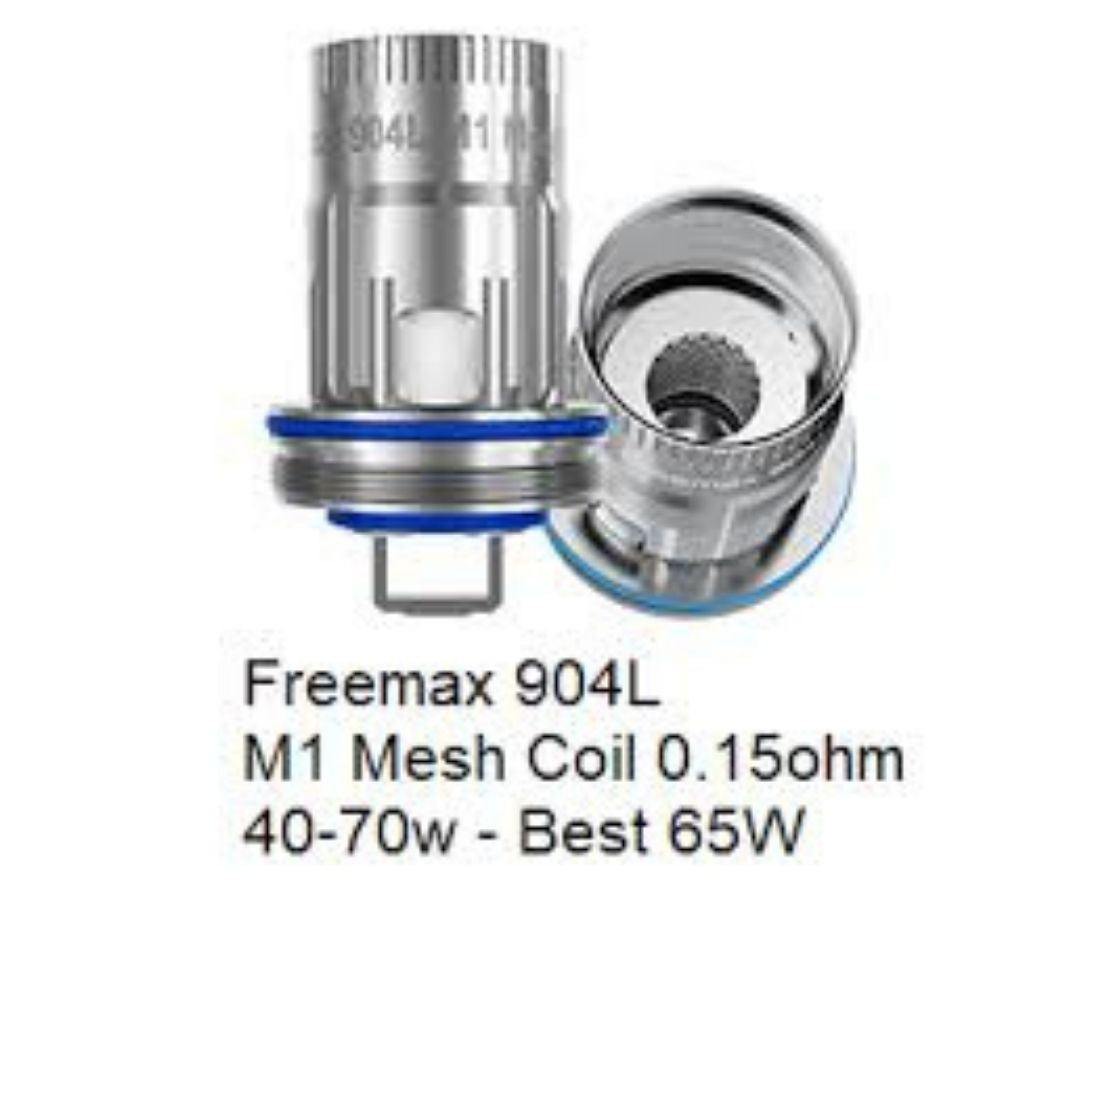 Freemax 904L M5 Coil